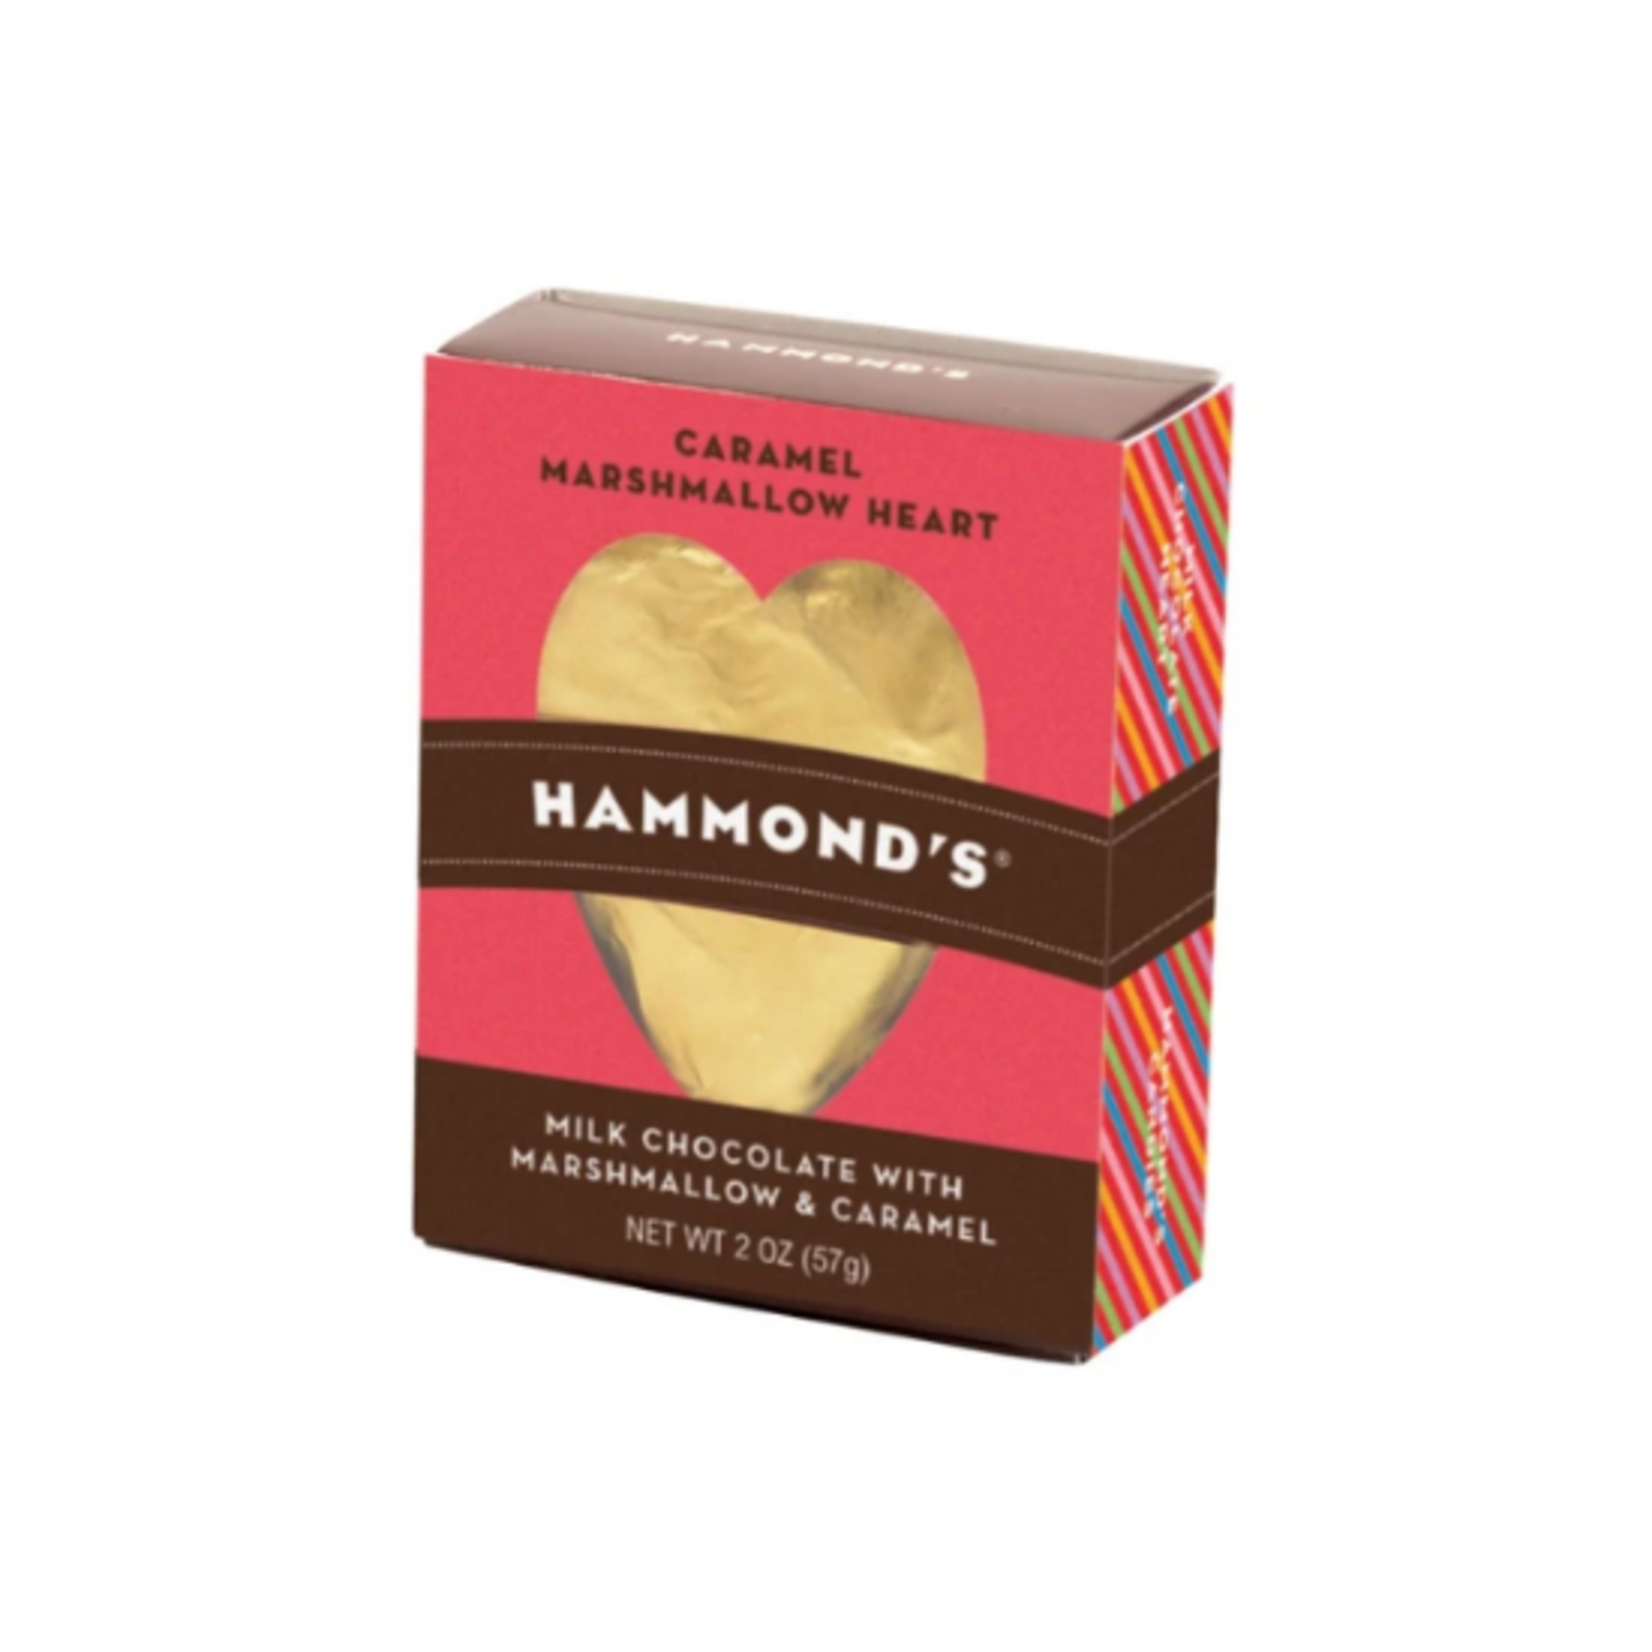 Hammond's Heart Marshmallow Caramel, single